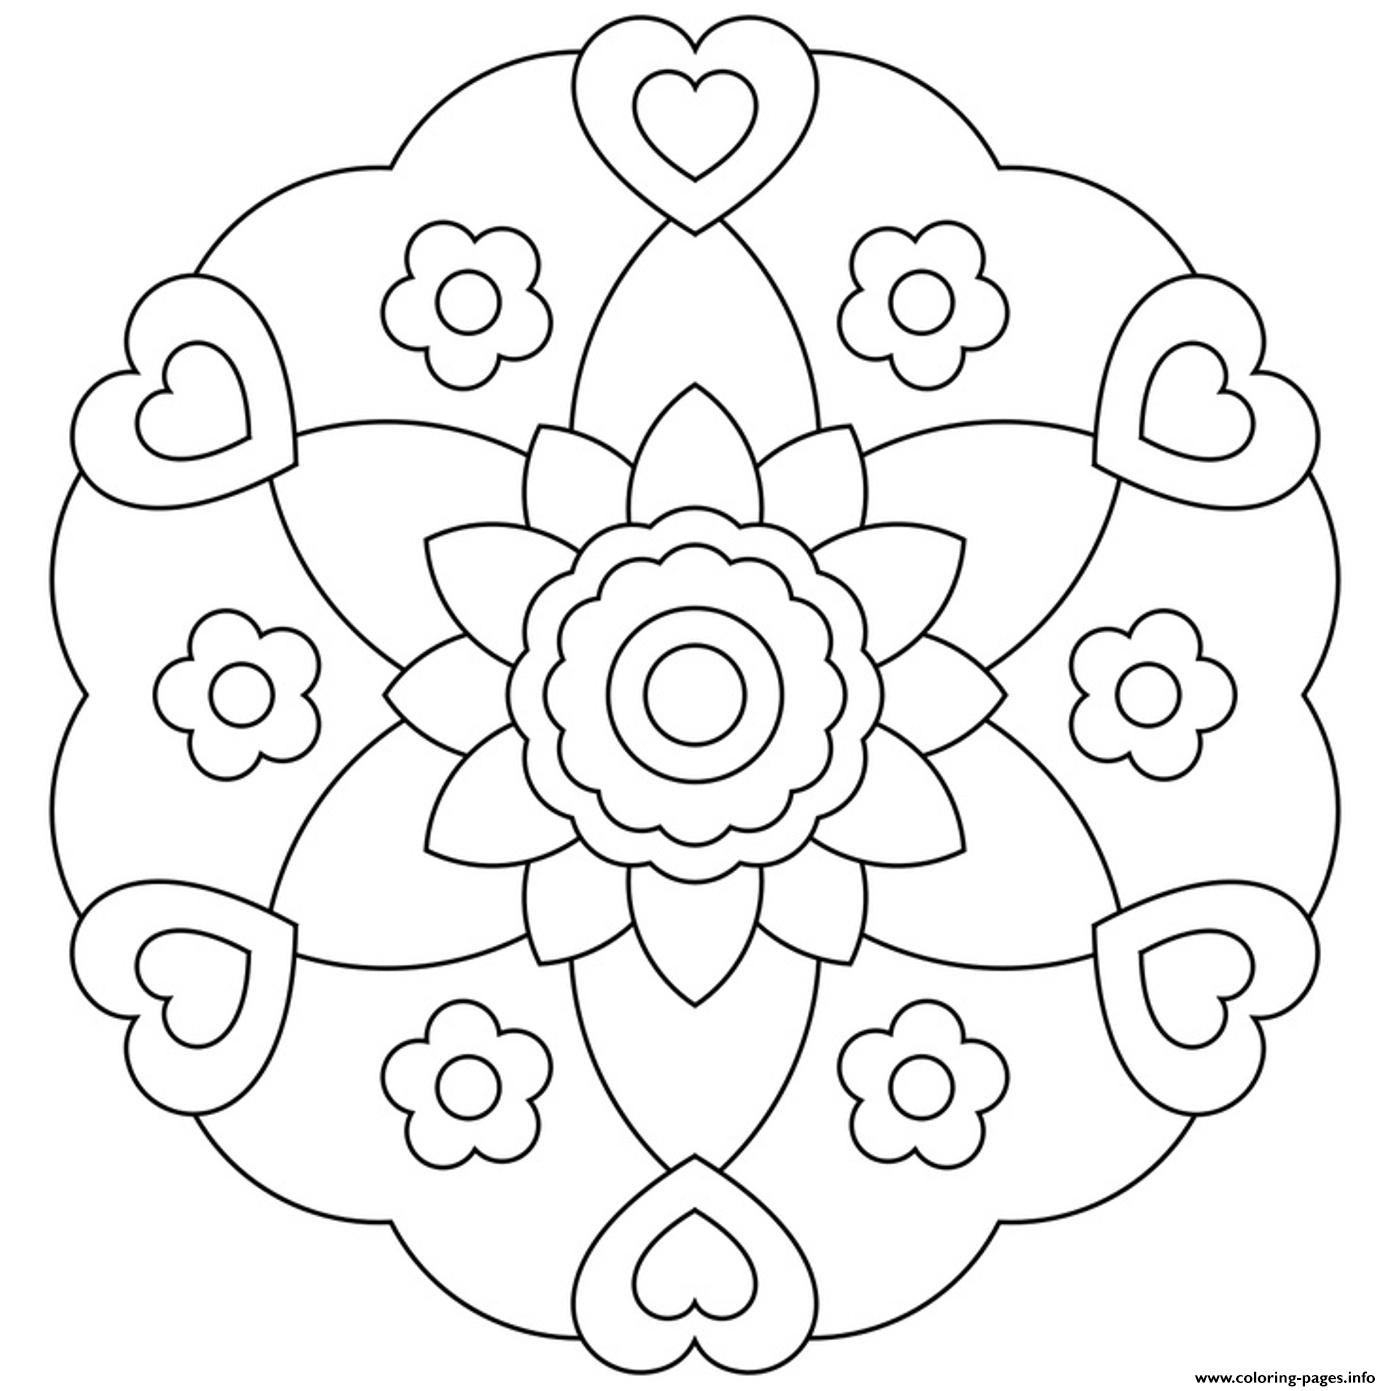 Flowerish Mandala Heart coloring